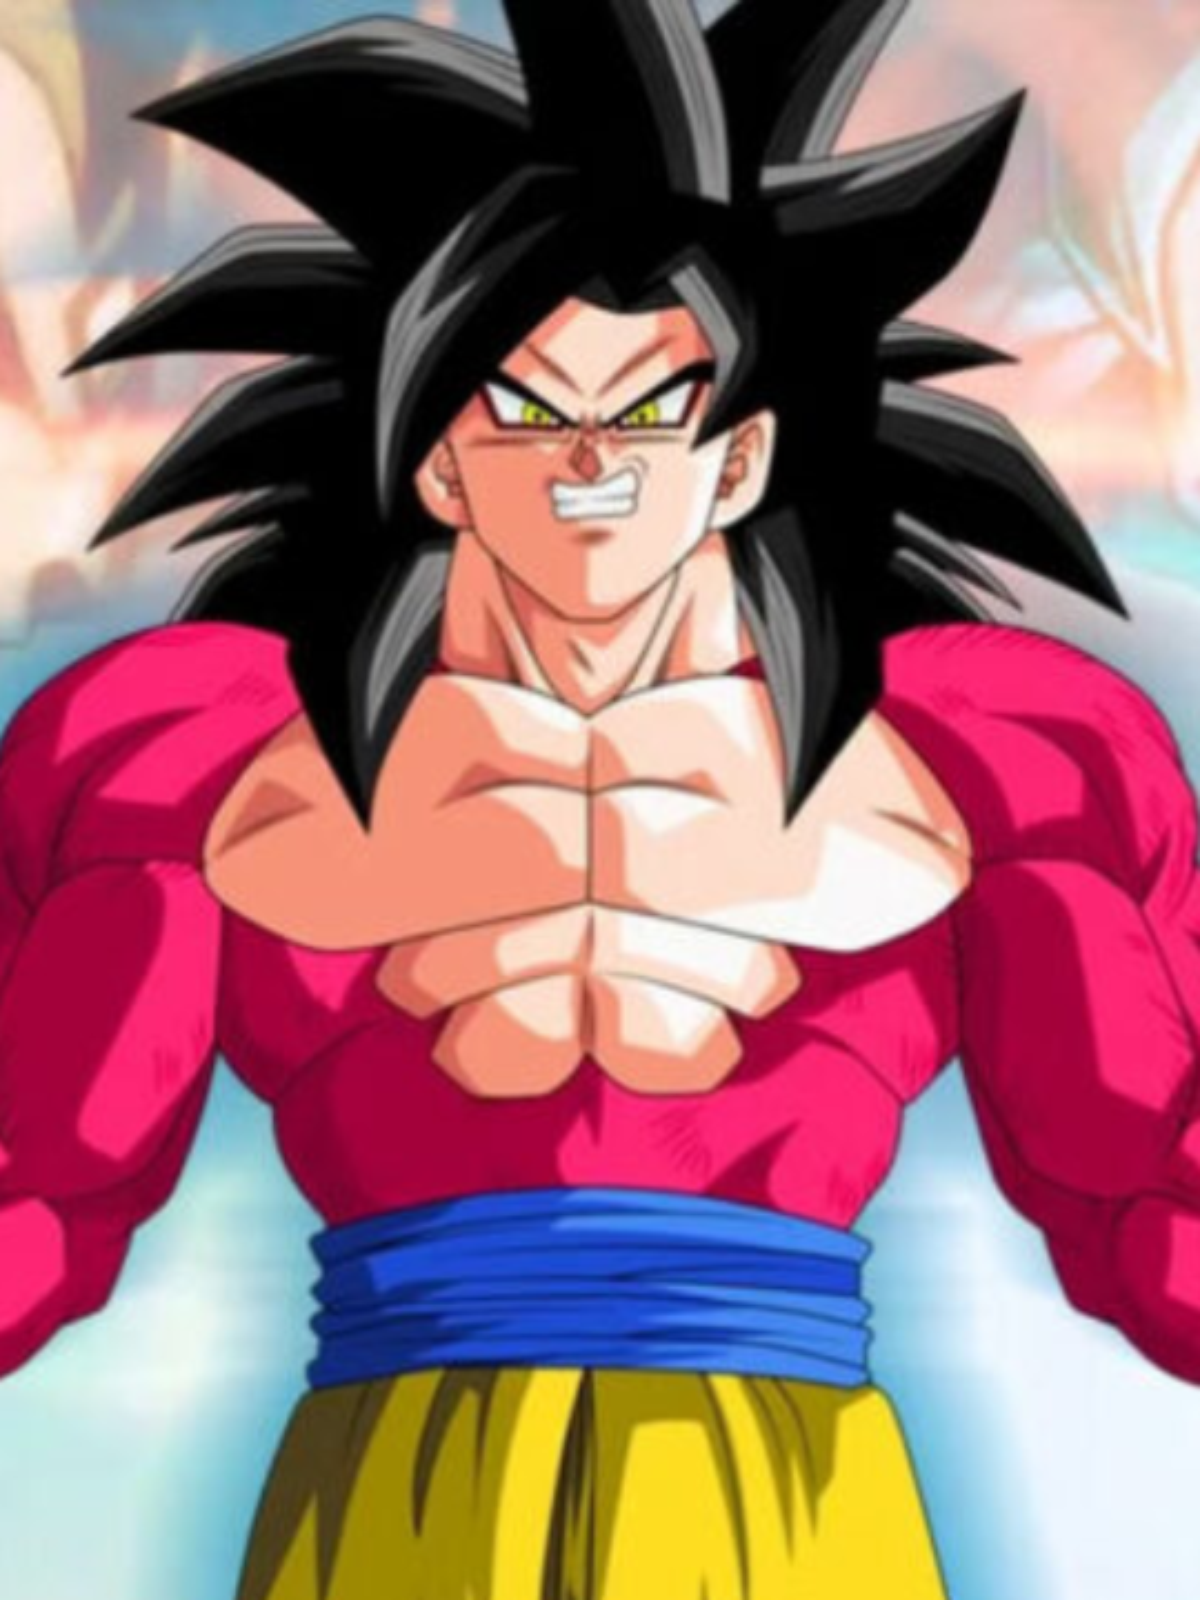 Dragon Ball': Akira Toriyama desenha sua própria versão do Super Saiyan 4